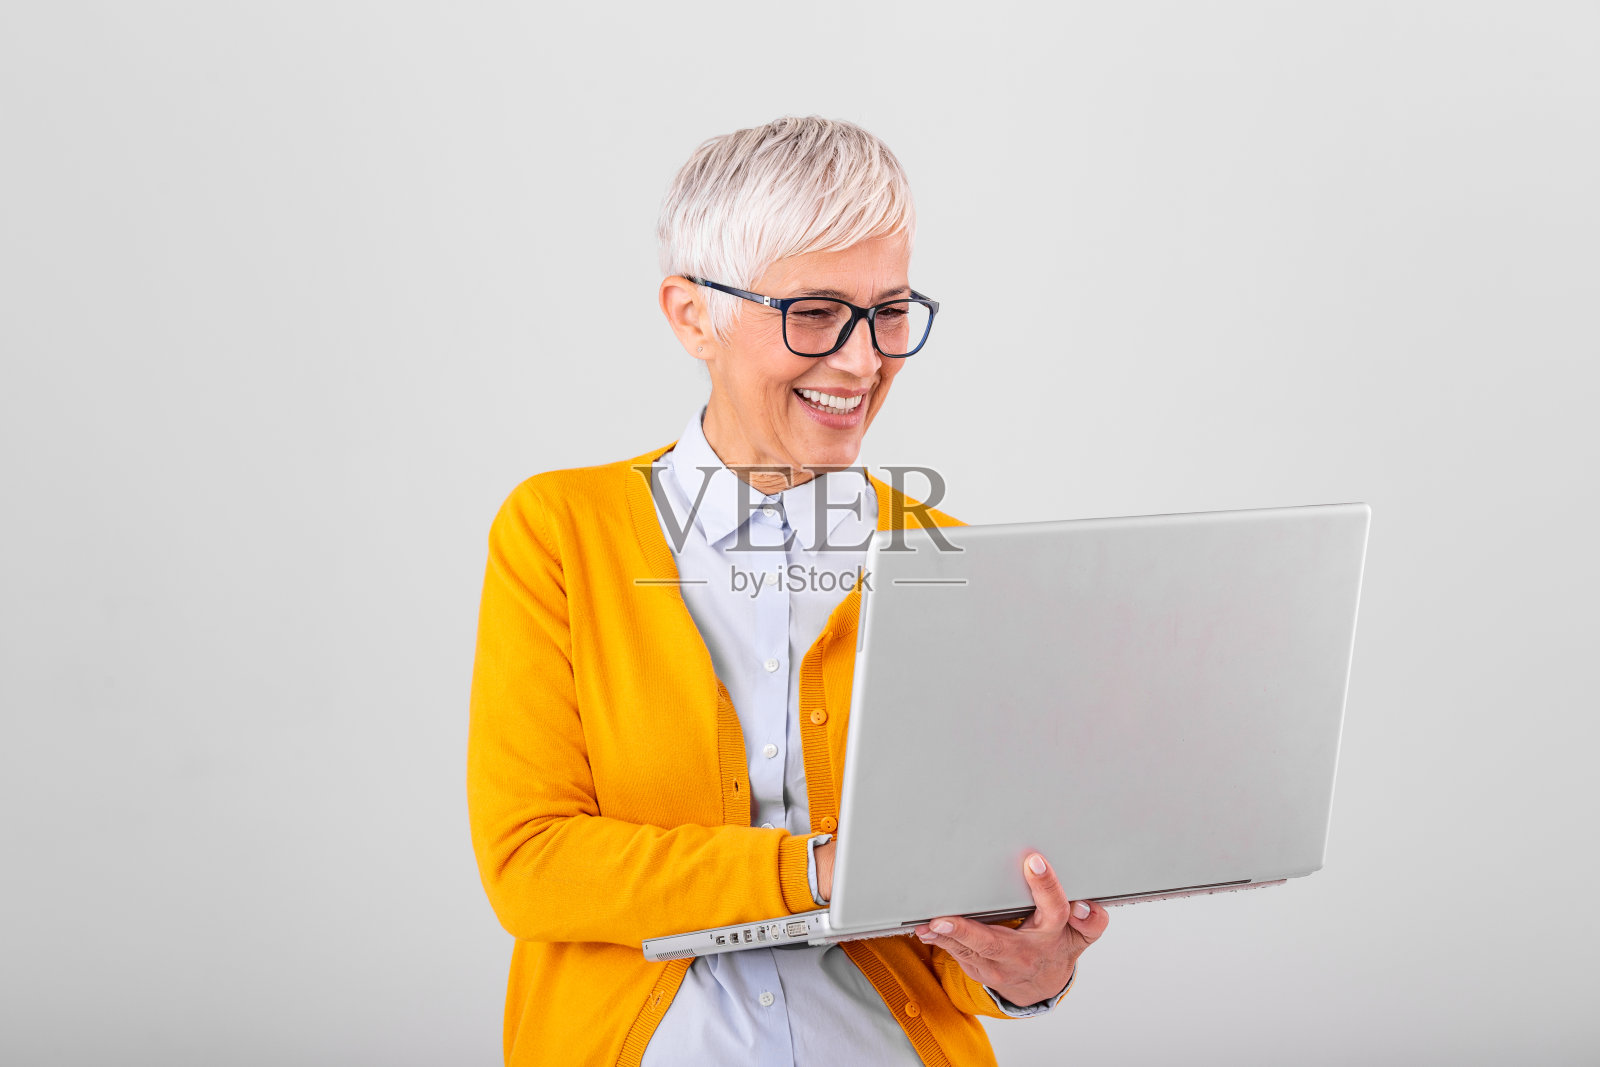 一个开朗成熟的女人孤立地站在灰色背景下使用笔记本电脑的画面。一个微笑的高级女士的肖像拿着笔记本电脑照片摄影图片